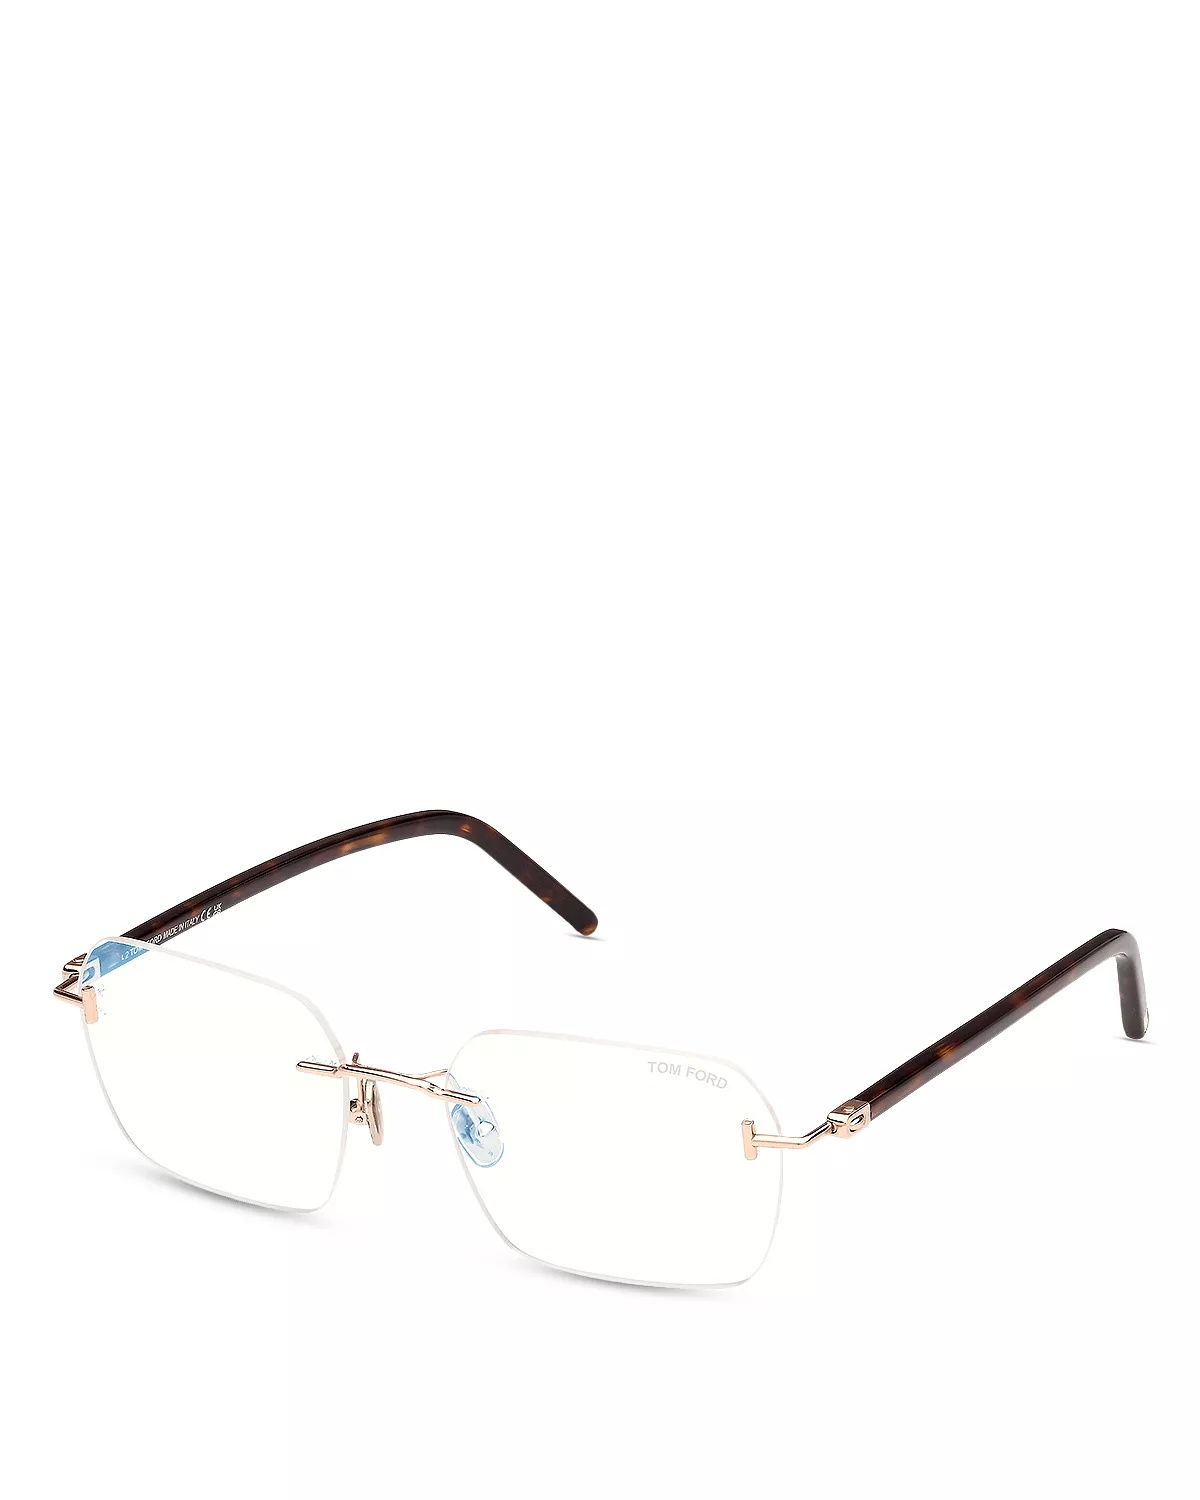 Rectangular Blue Light Glasses, 54mm - 1